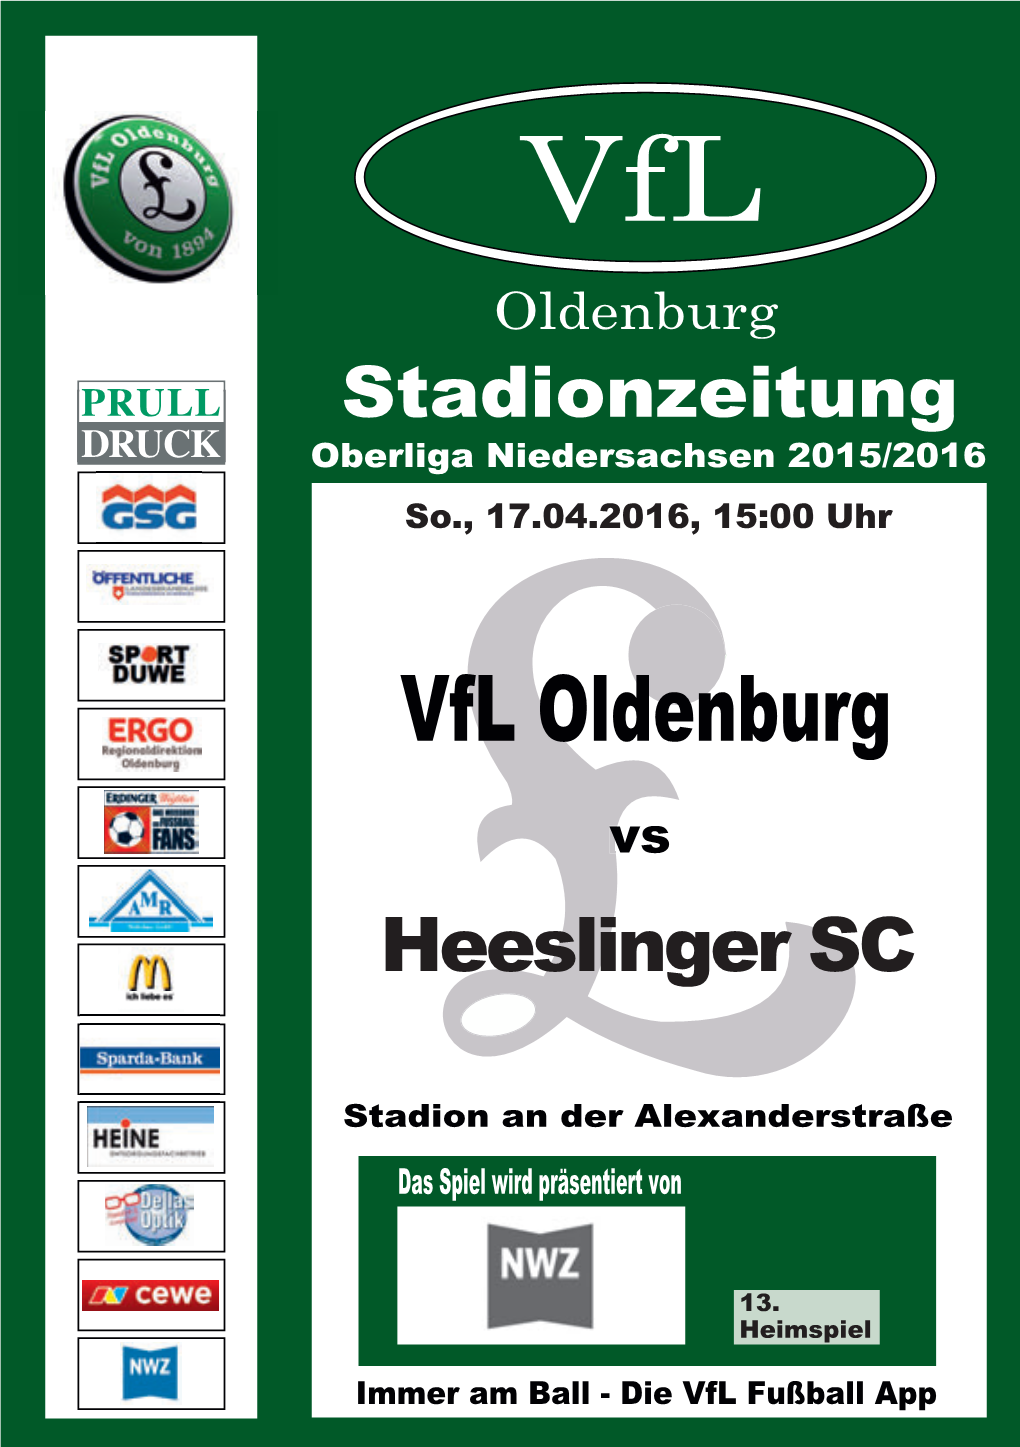 Vfl Oldenburg Stadionzeitung Oberliga Niedersachsen 2015/2016 So., 17.04.2016, 15:00 Uhr